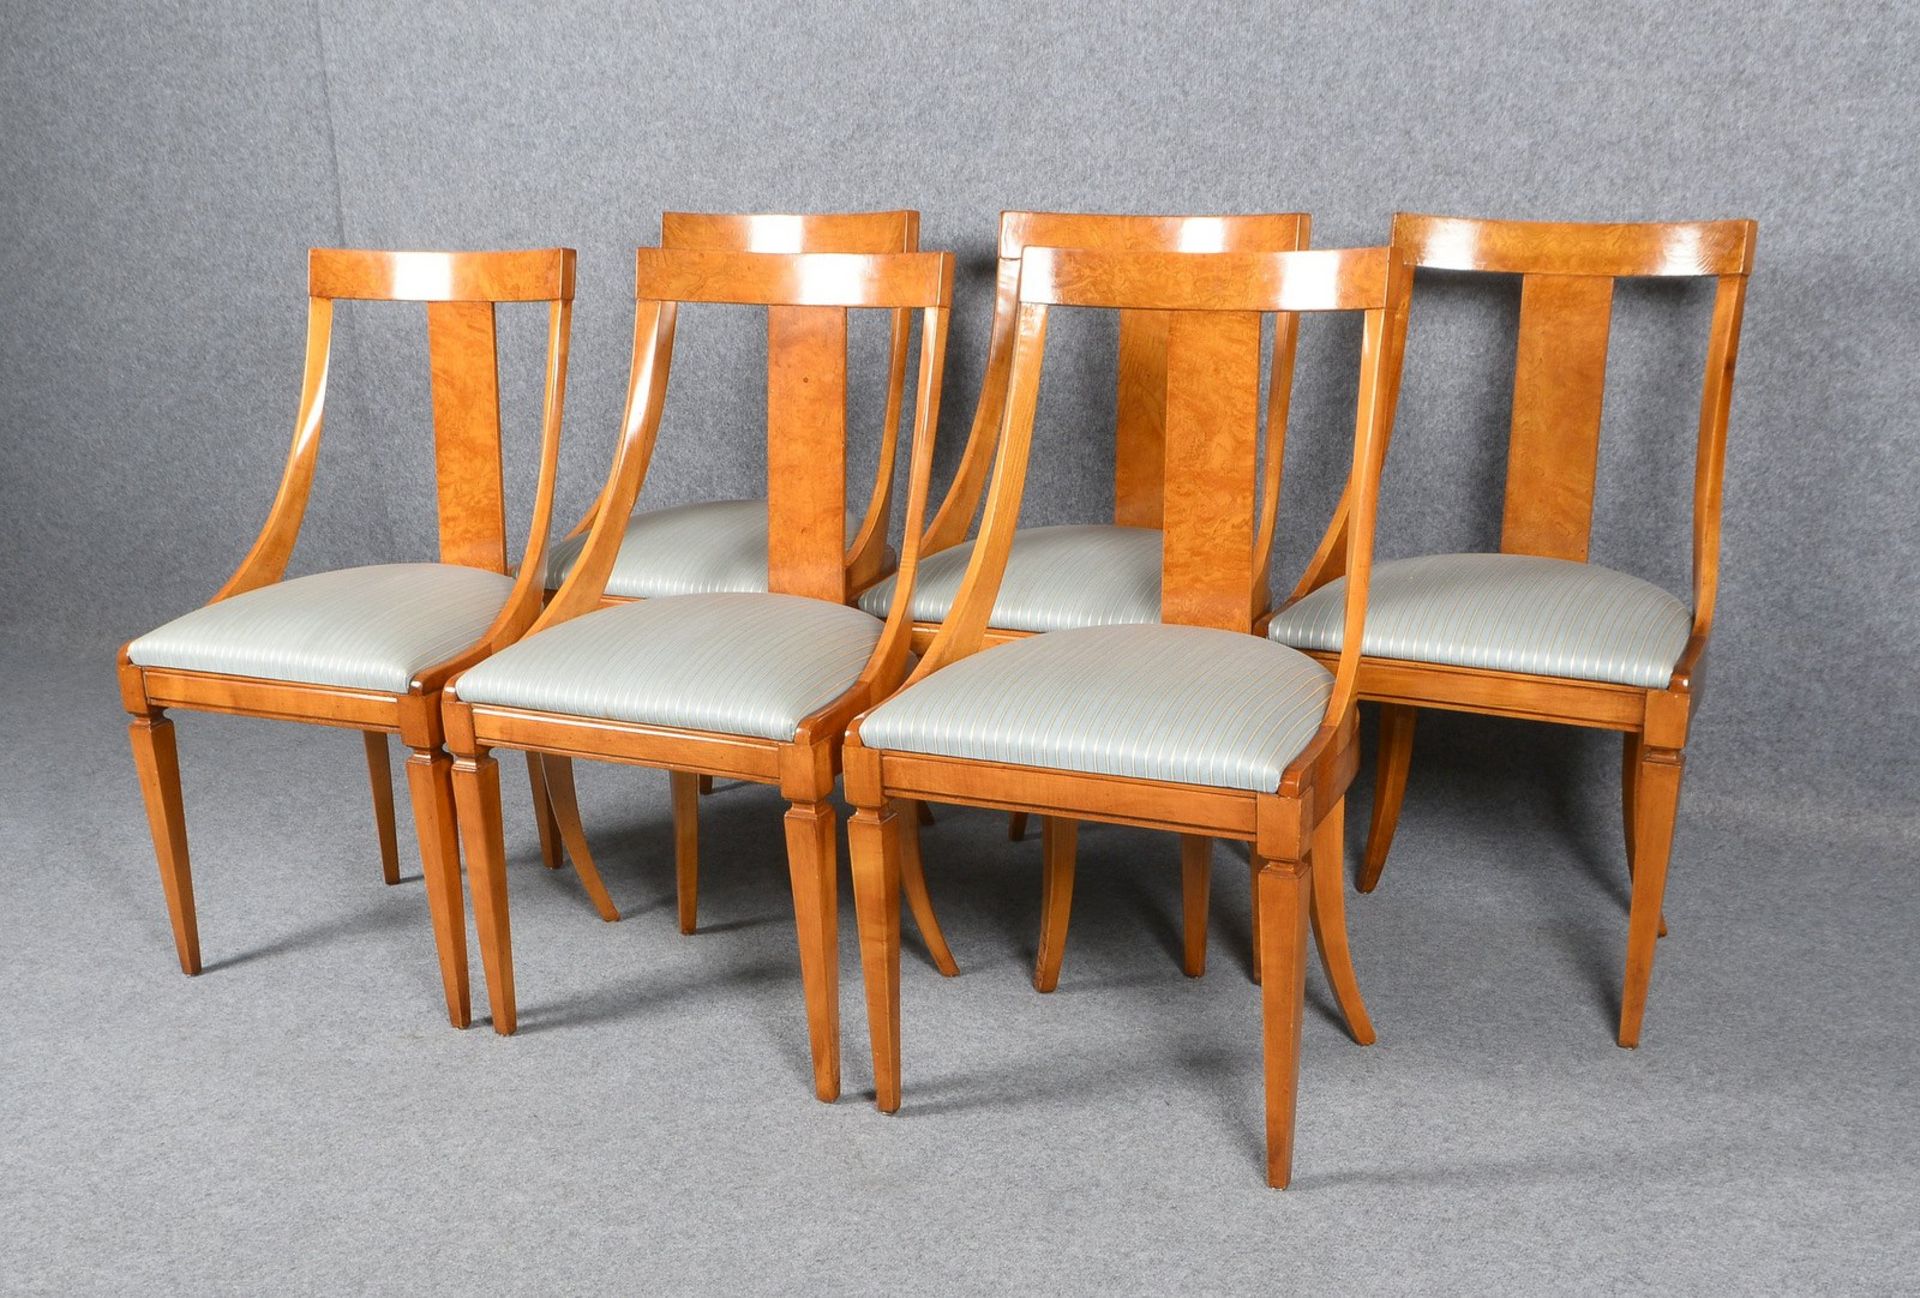 6 Stühle (Stilmöbel), Wurzelholzfurnier, in wohnfertigem Zustand; Sitzhöhe 45 cm - Bild 3 aus 3